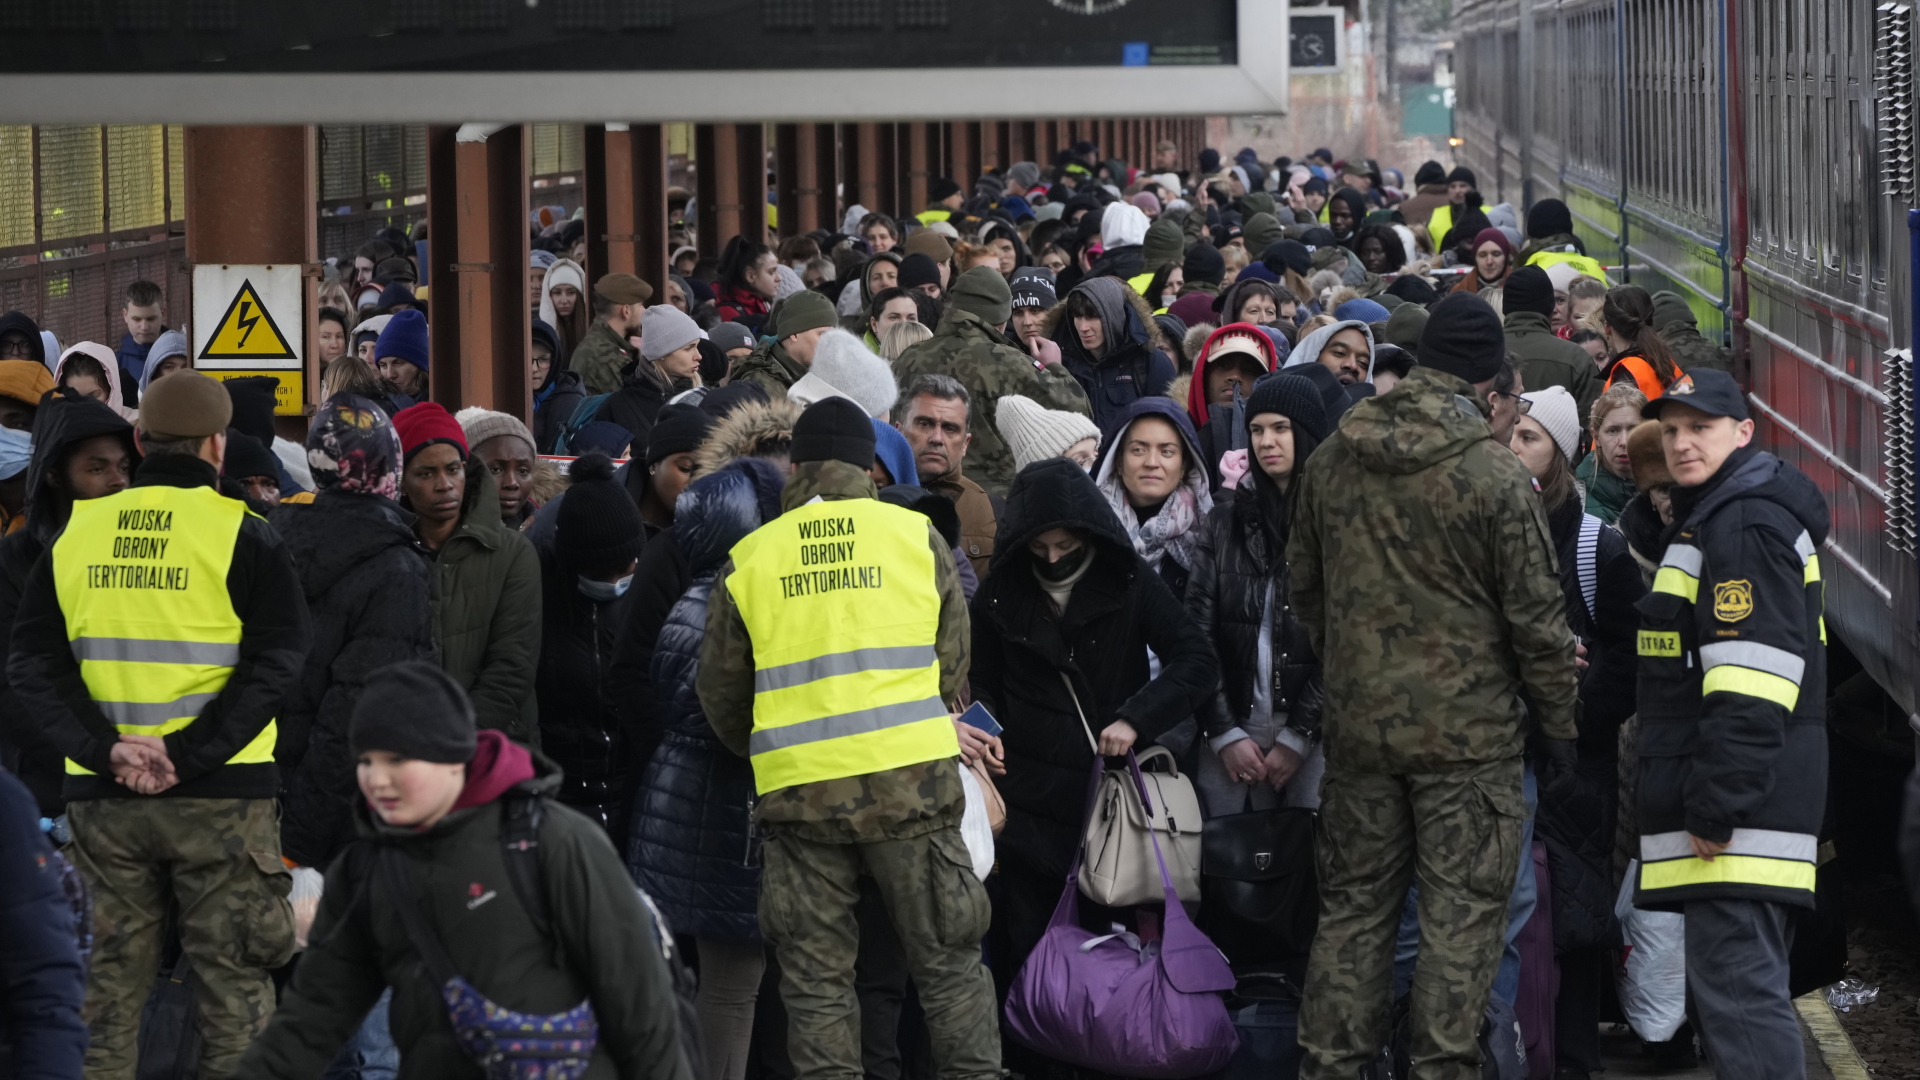 Ukrainische Flüchtlinge in Polen | dpa